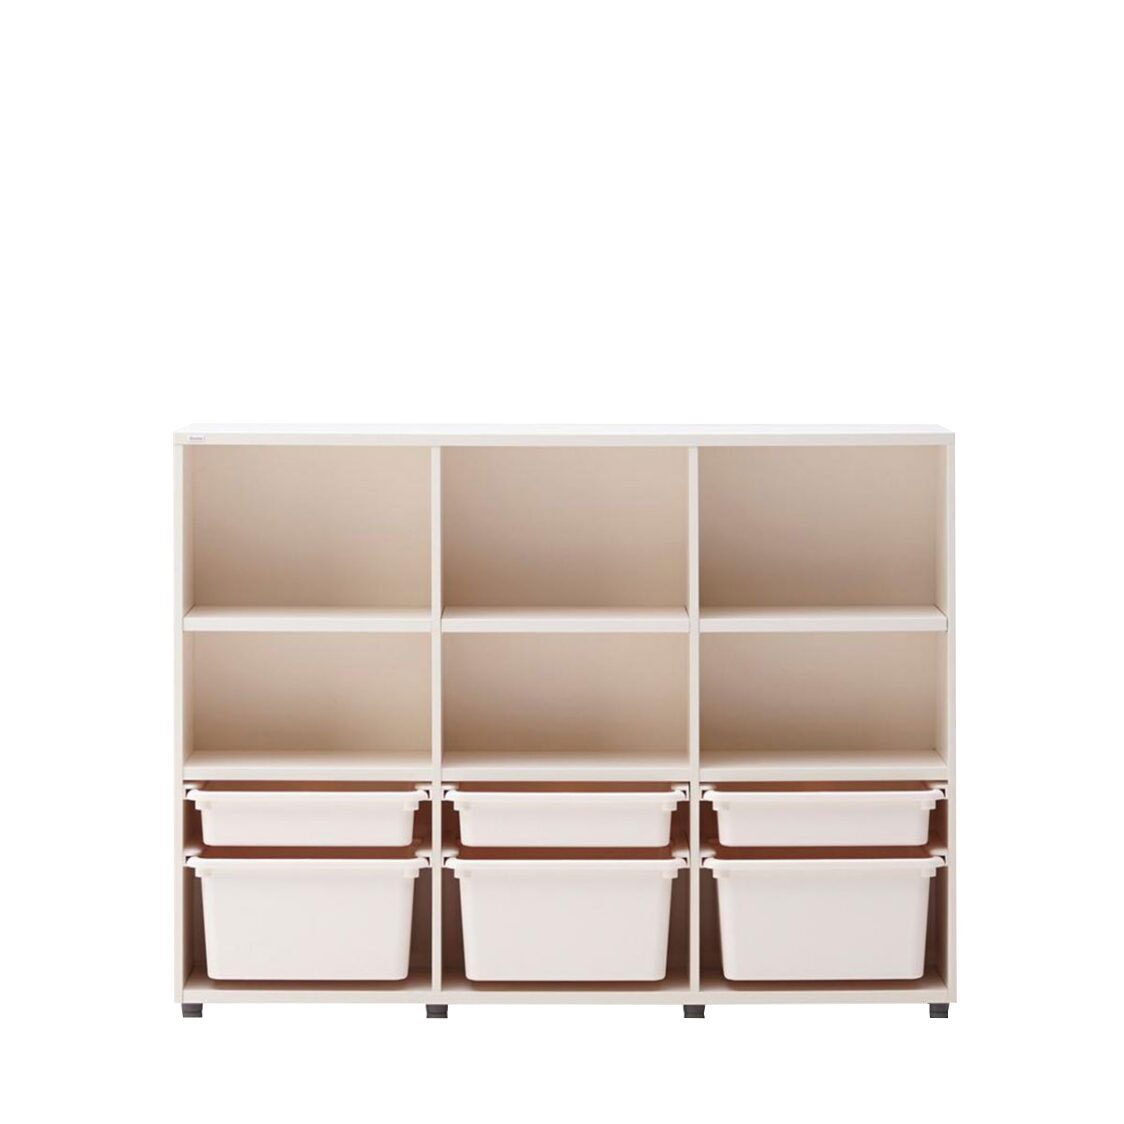 Iloom 3-Story Bookshelf with PL Box Storage 1400W Ivory